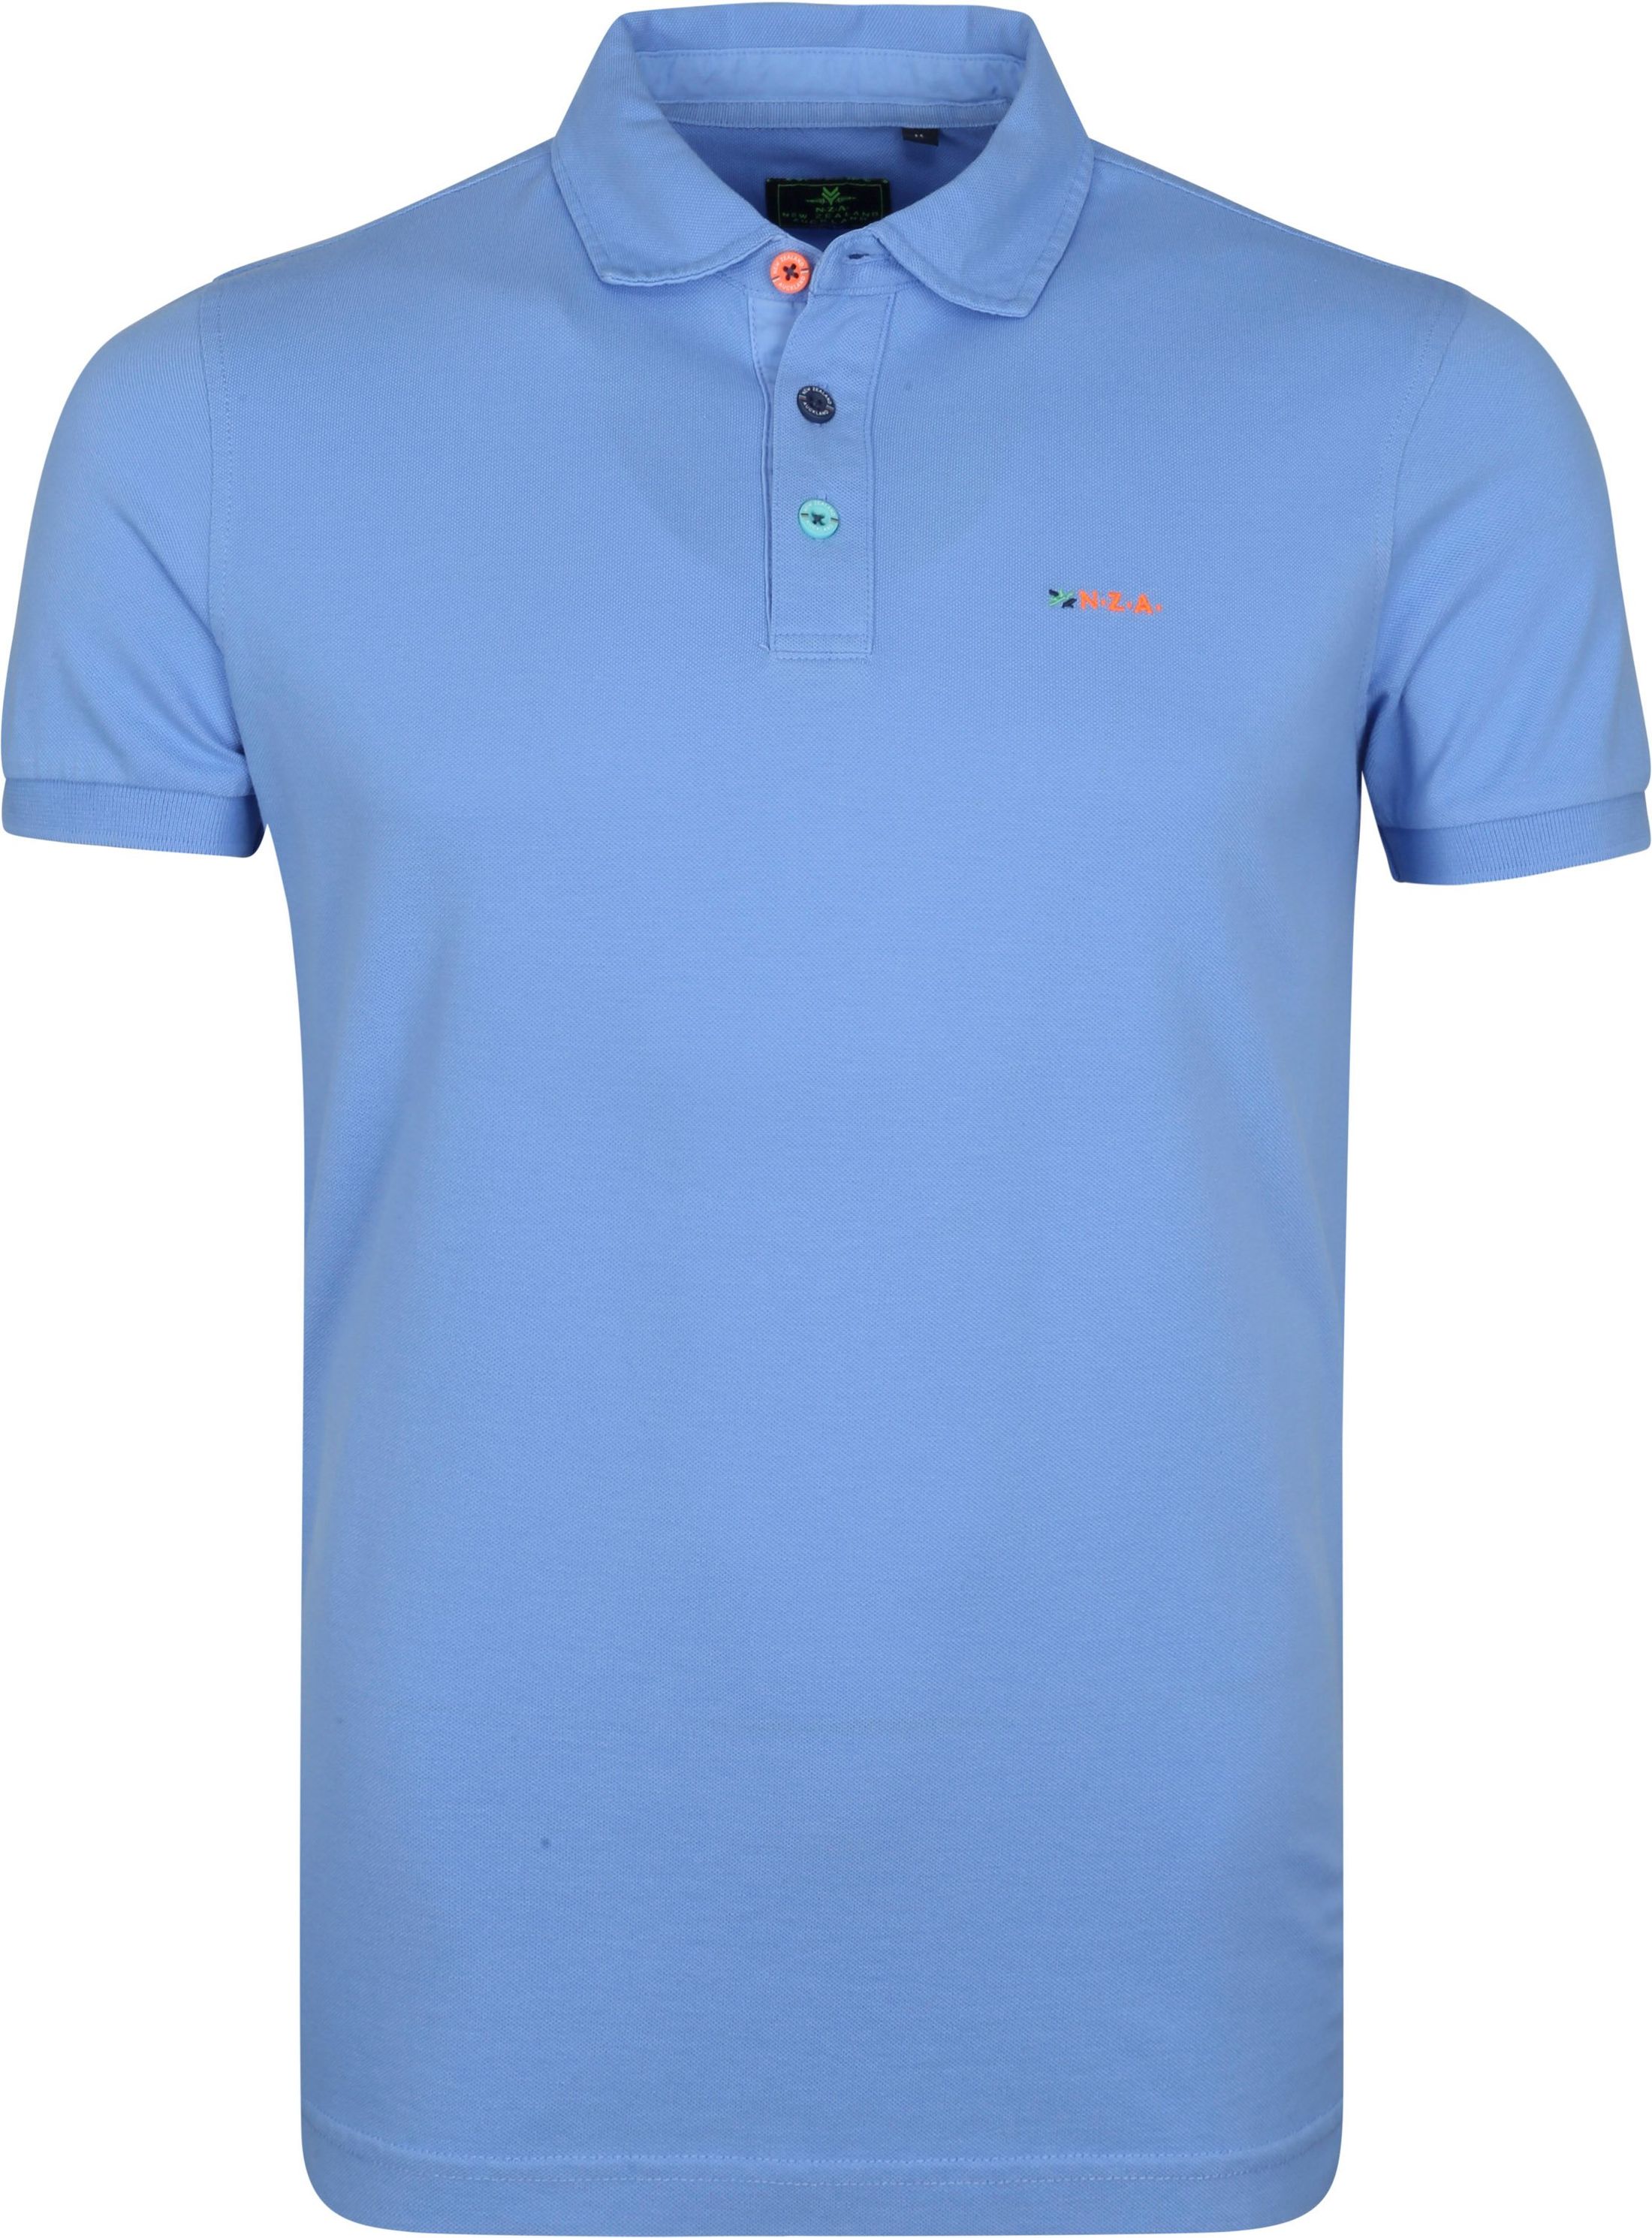 NZA Polo Shirt Moerewa Blue size 3XL